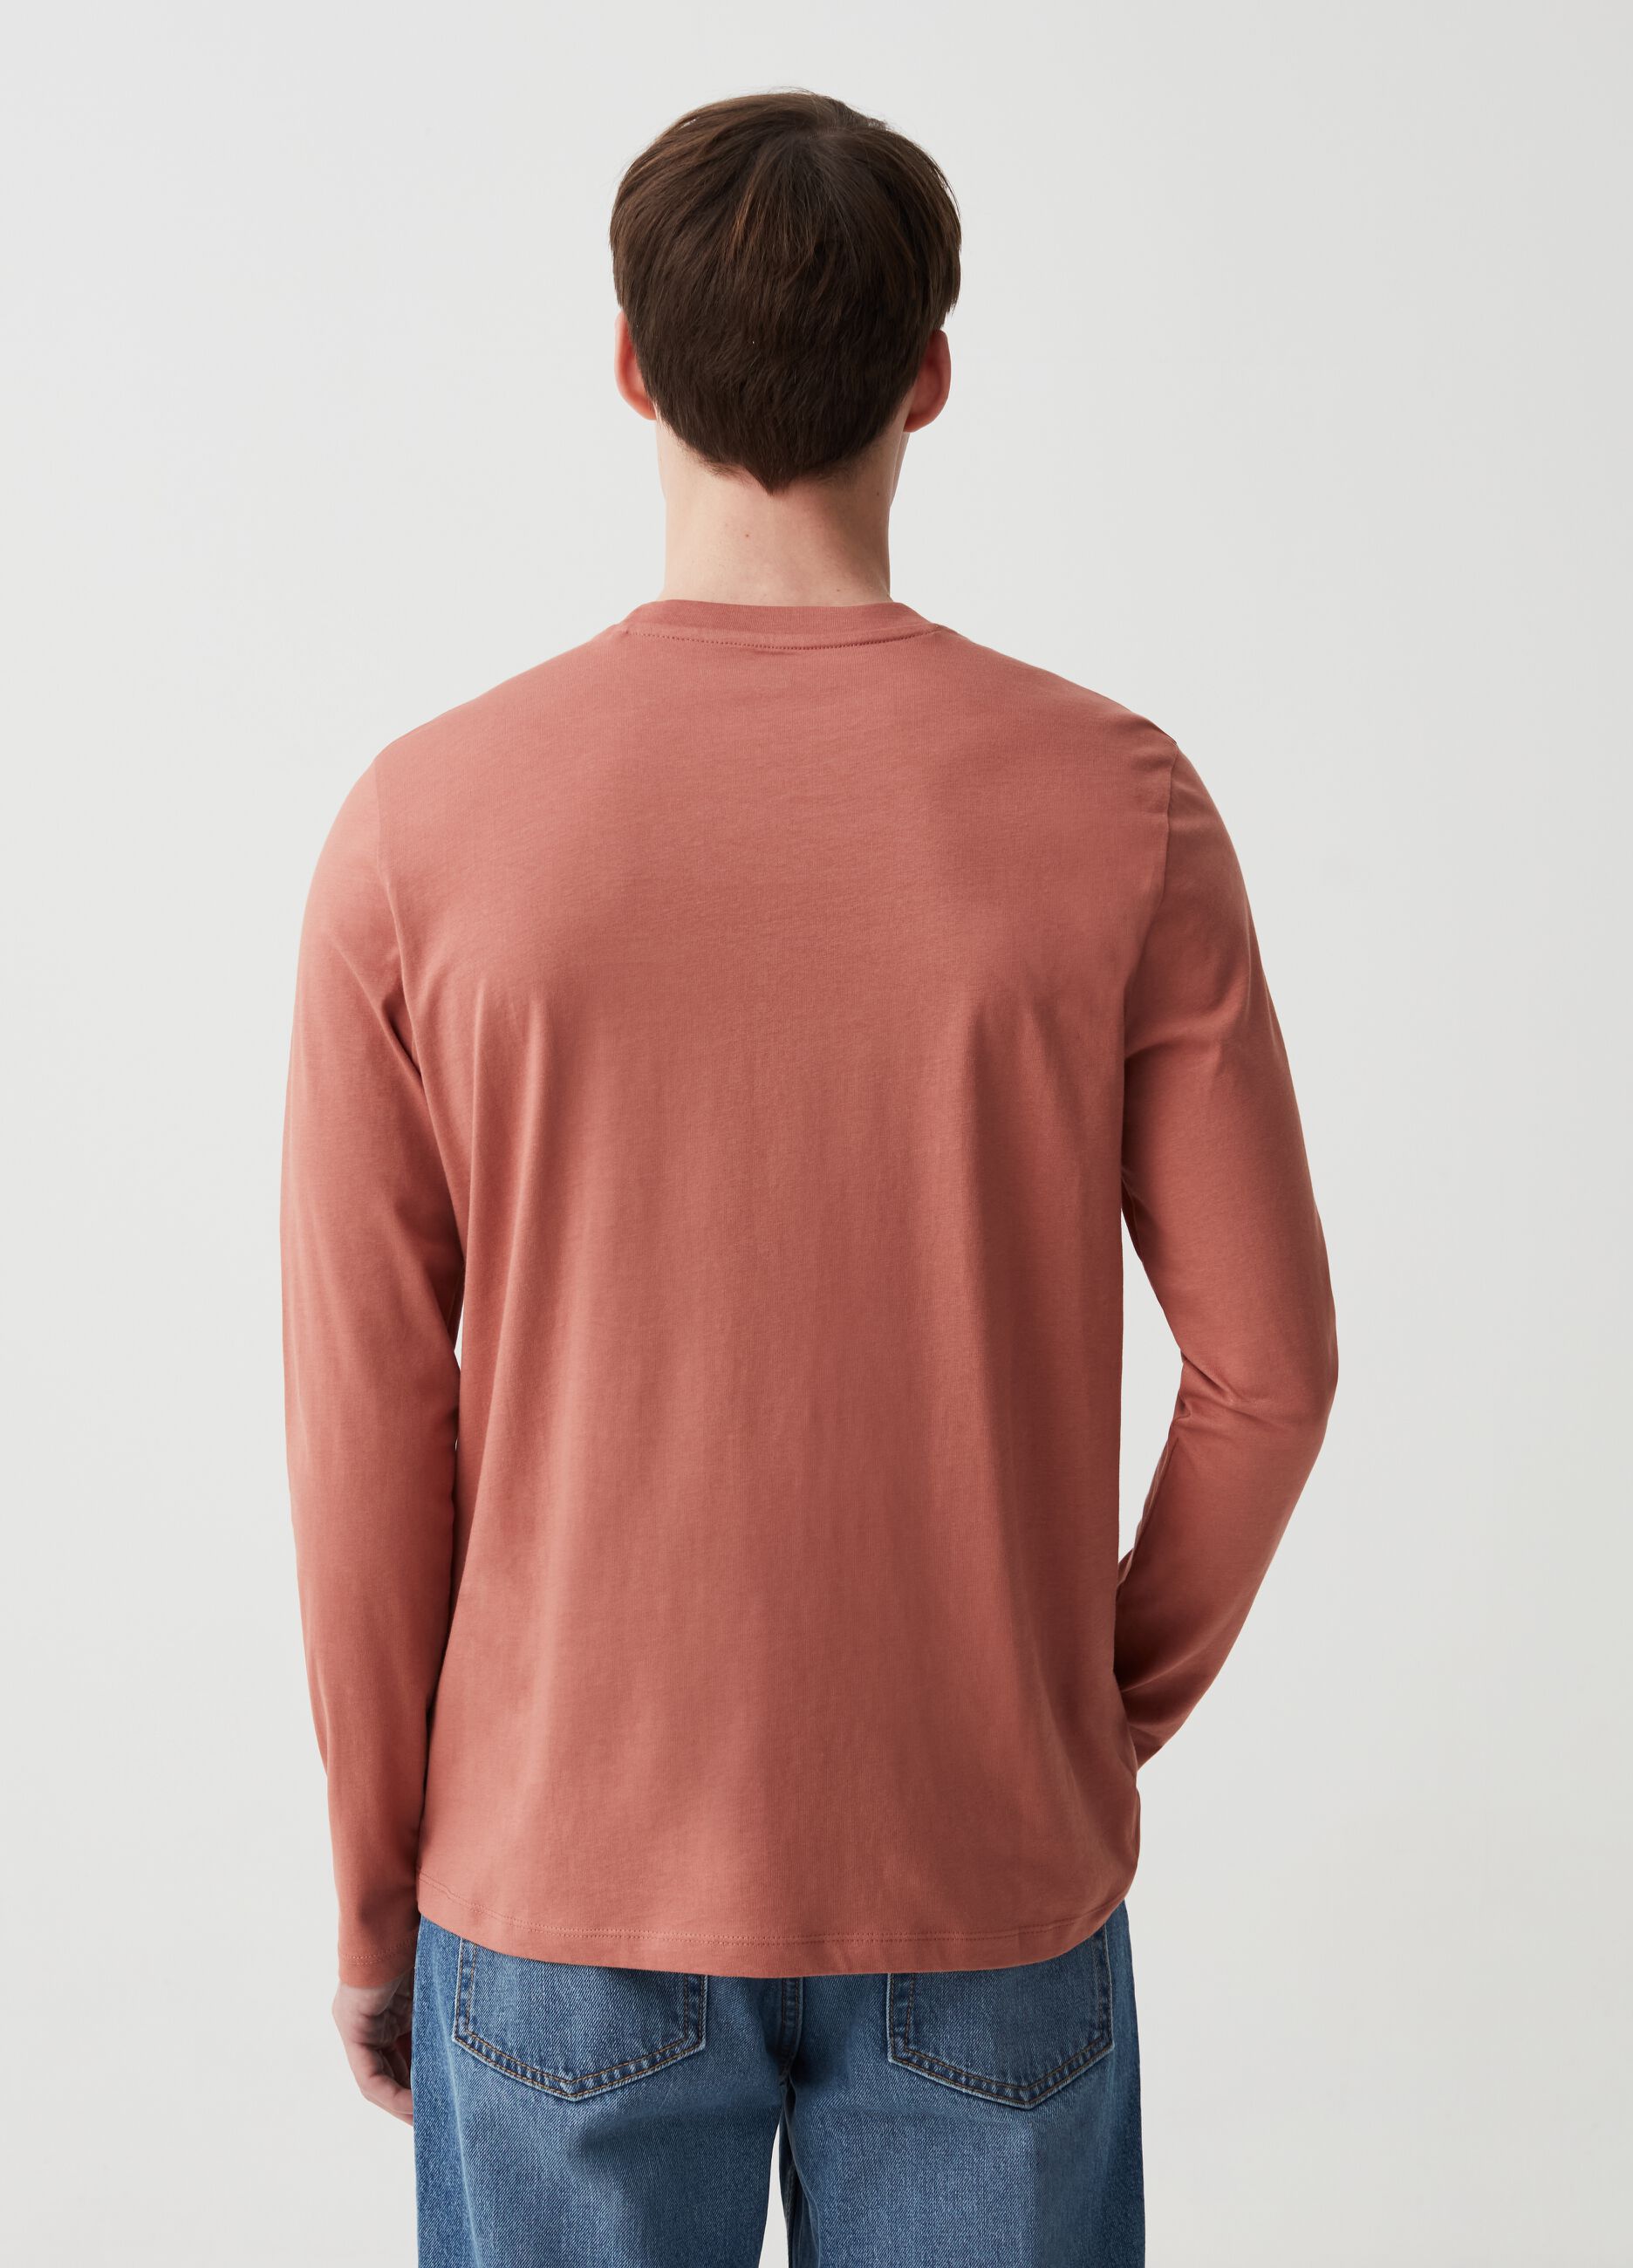 Camiseta cuello redondo de manga larga